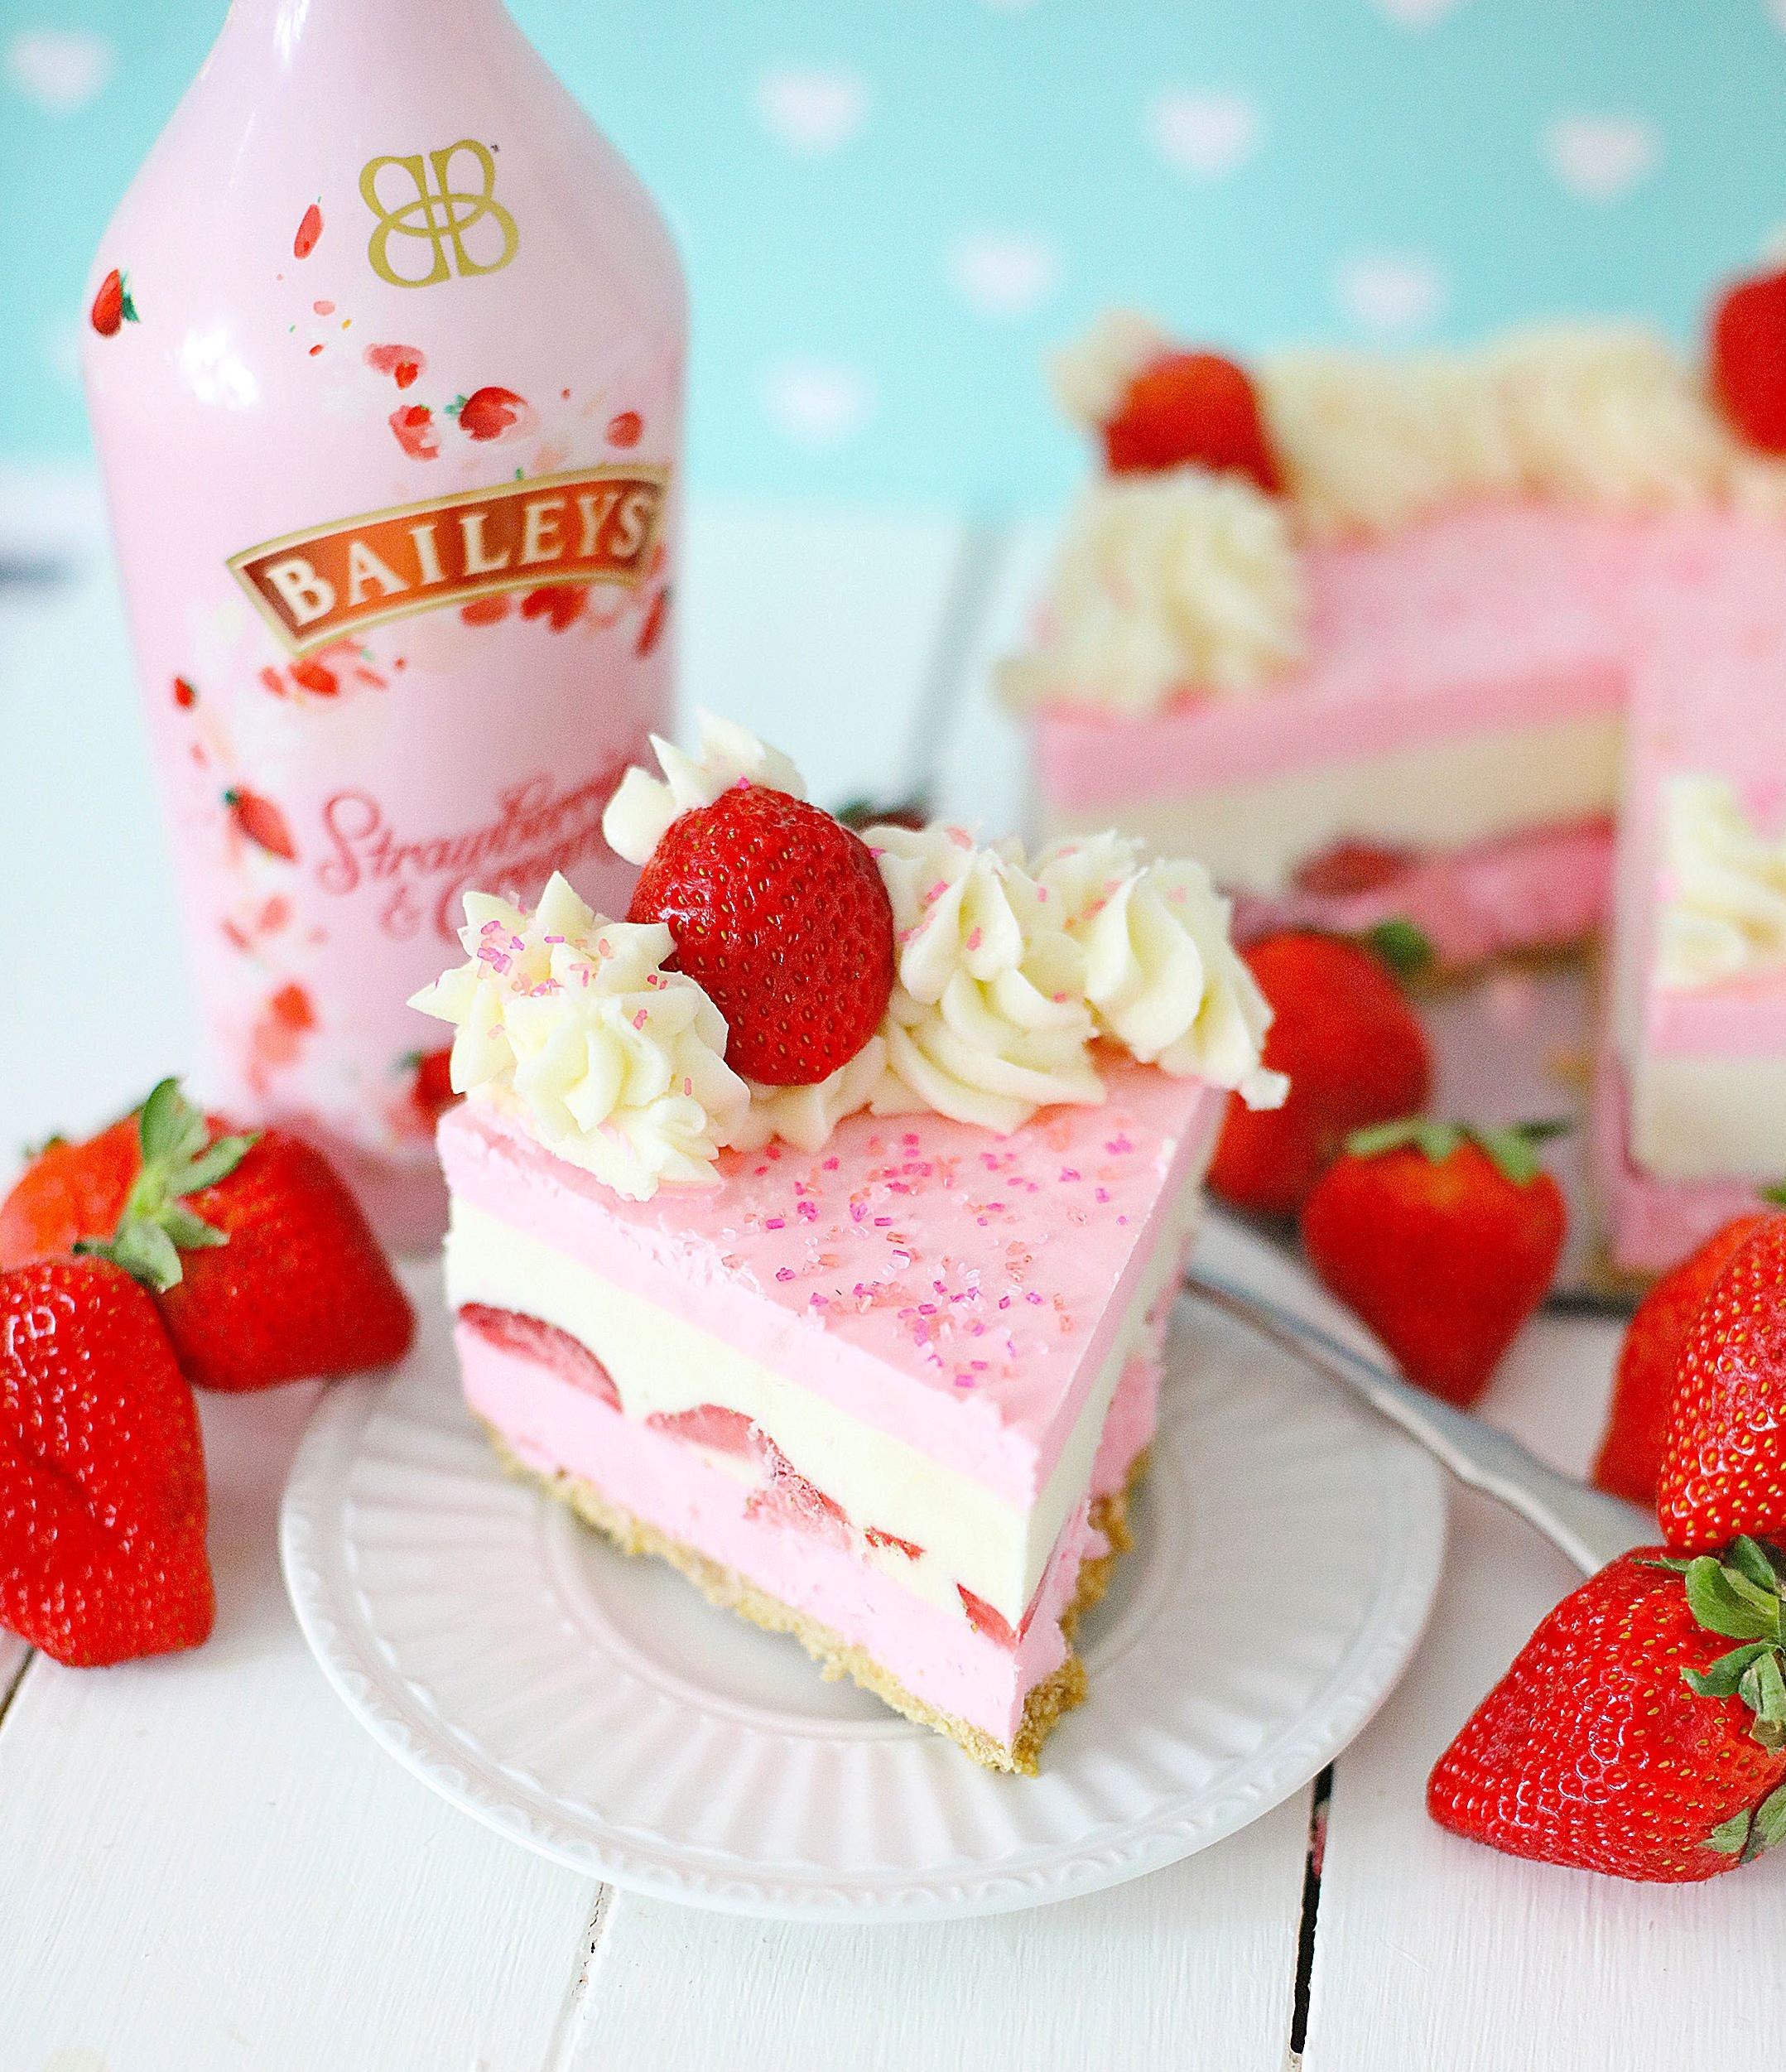 Irish Strawberry-And-Cream Cheesecake